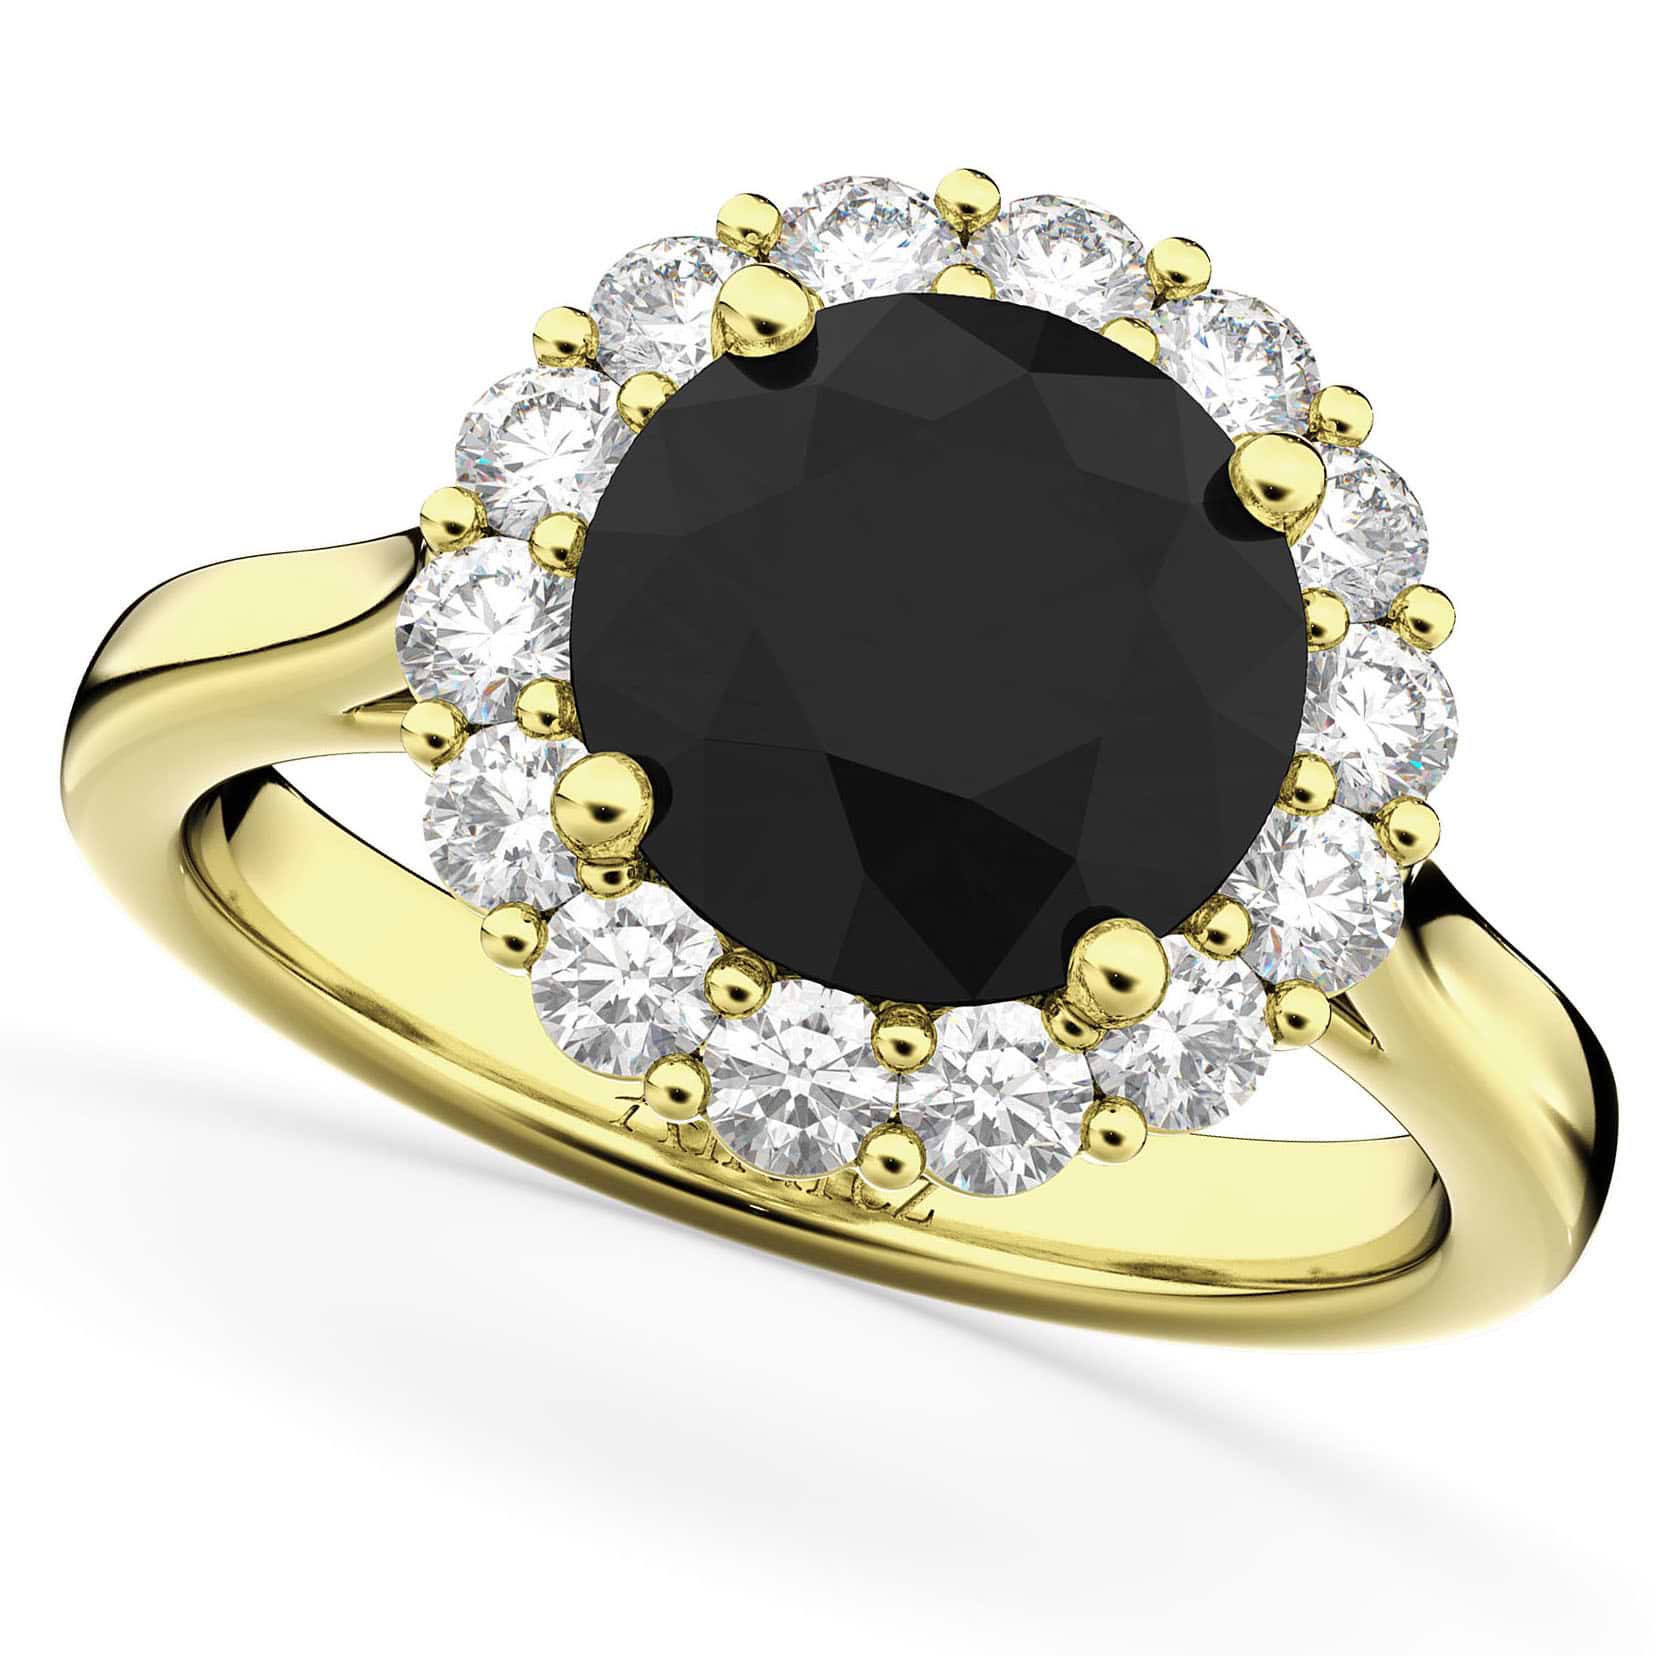 Round Black Diamond & Diamond Engagement Ring 14K Yellow Gold (3.20ct)